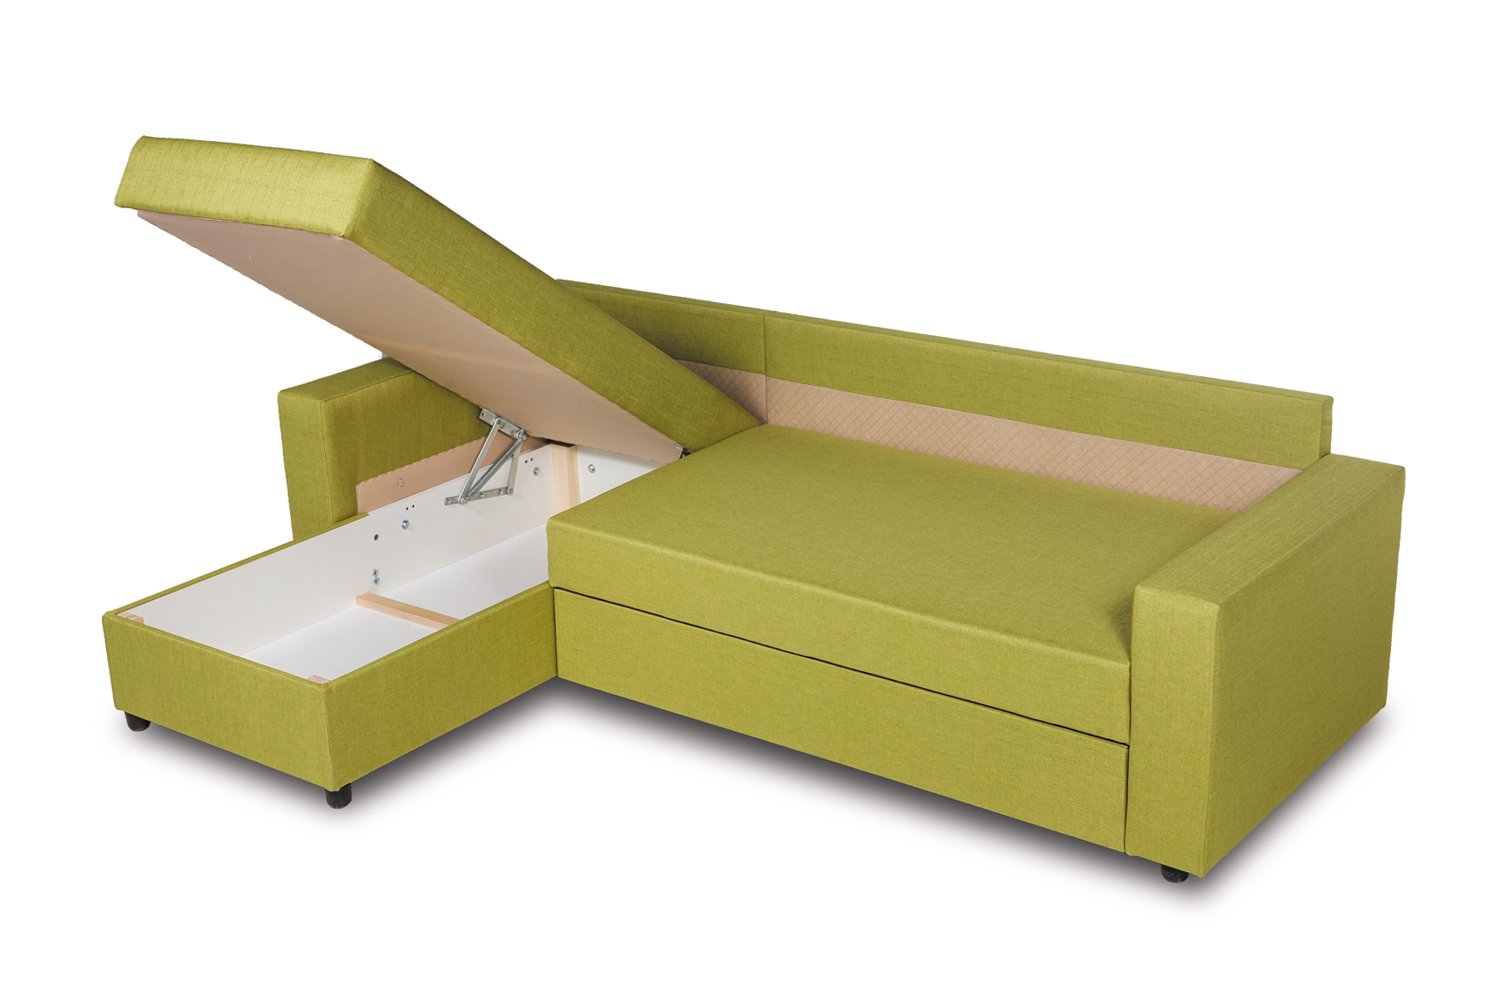 мини диваны для детей со спальным местом